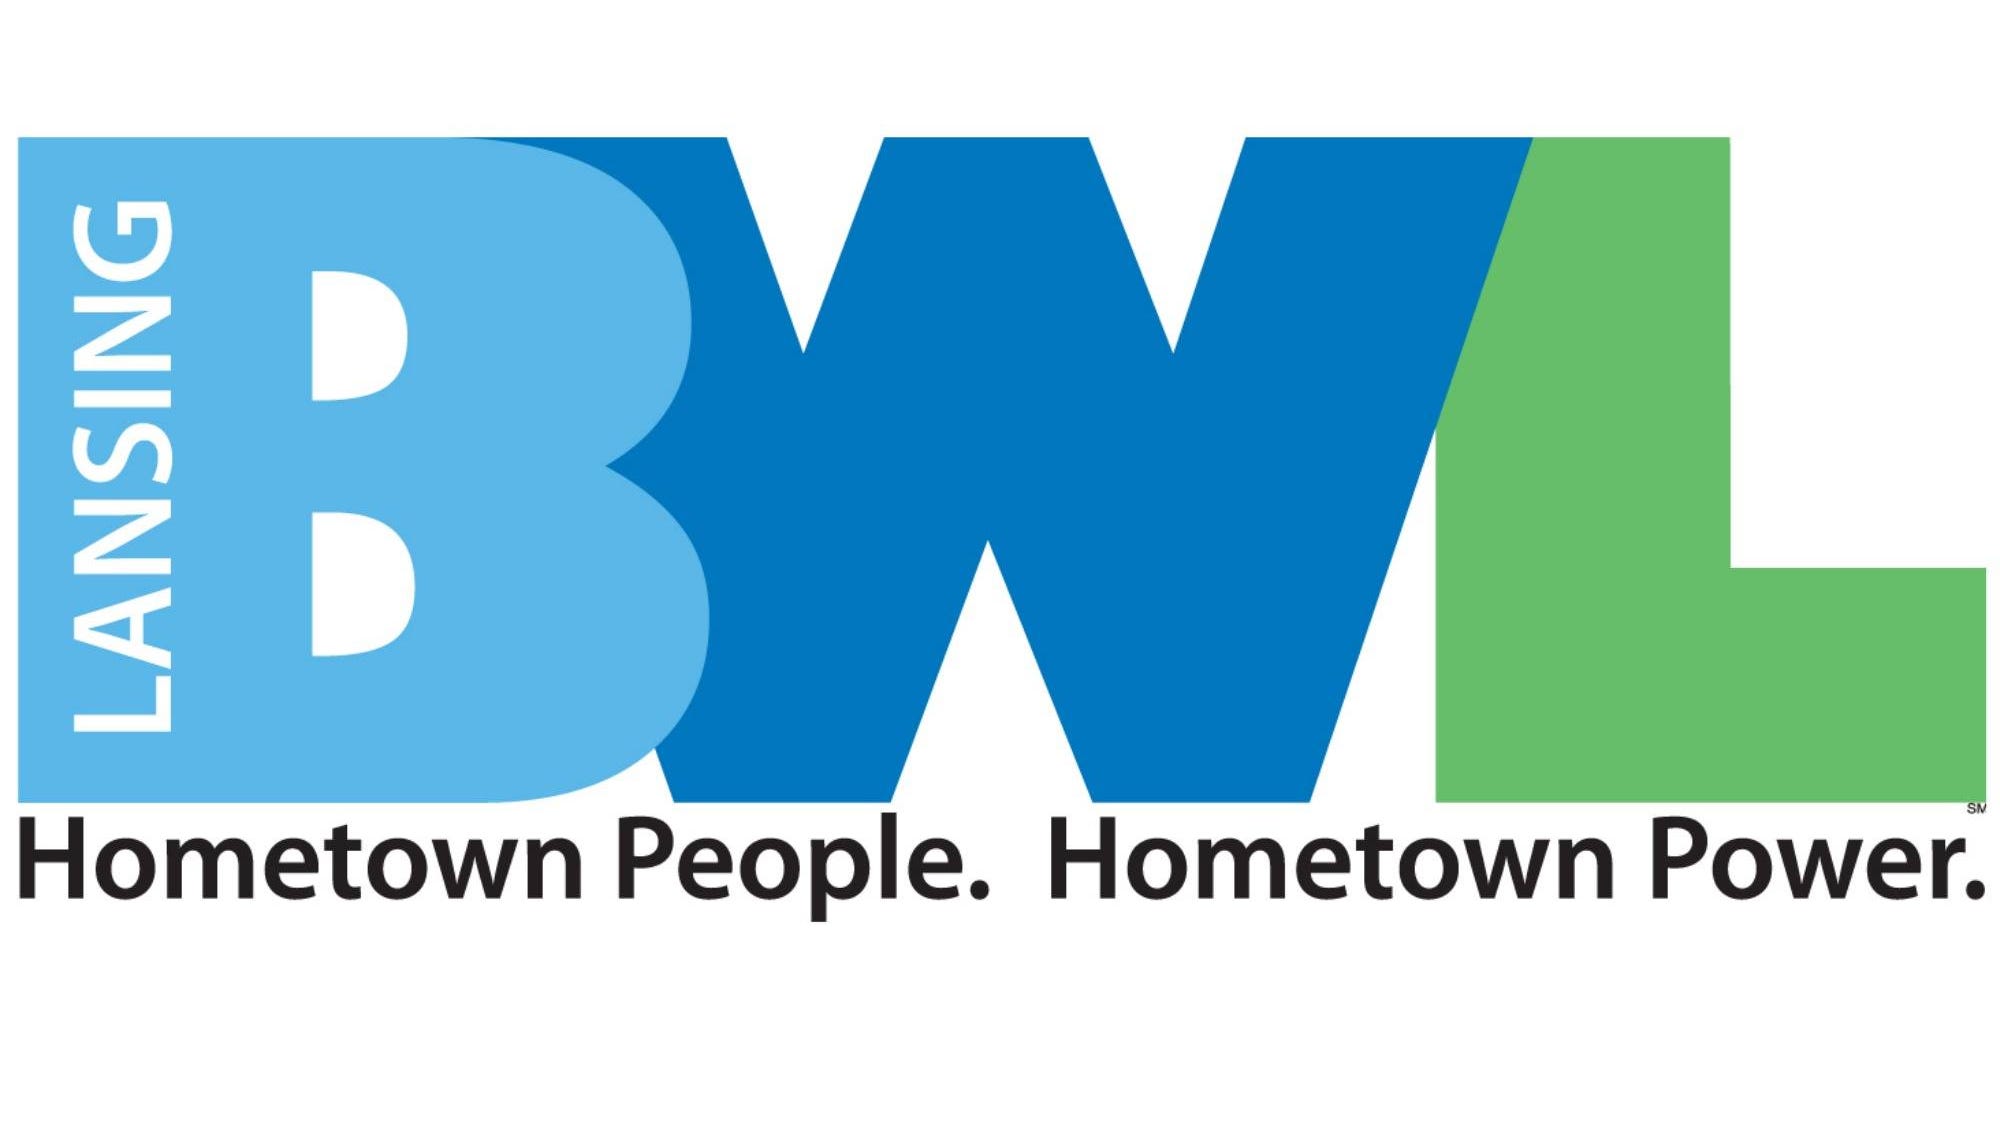 BWL biedt kortingen voor e-bikes en andere elektrische technologie